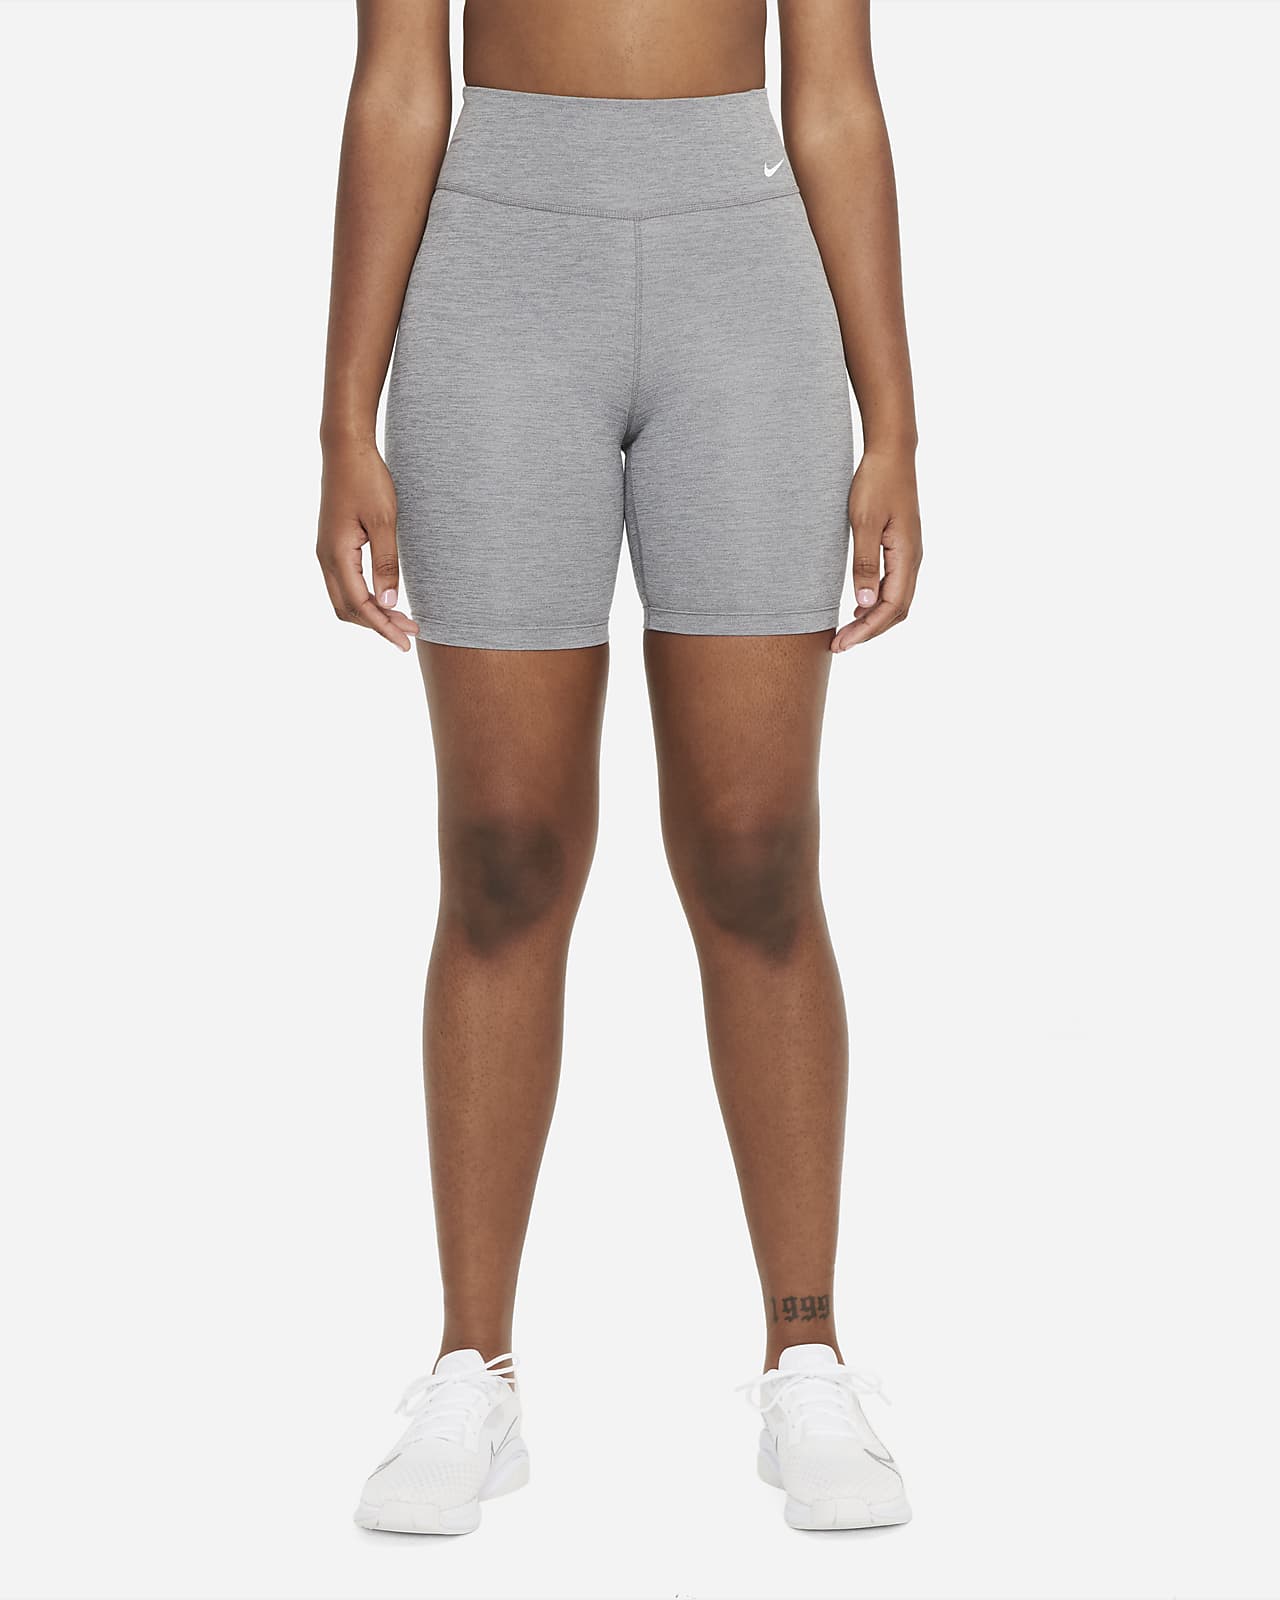 Sheer Shorts for Woman -  Denmark